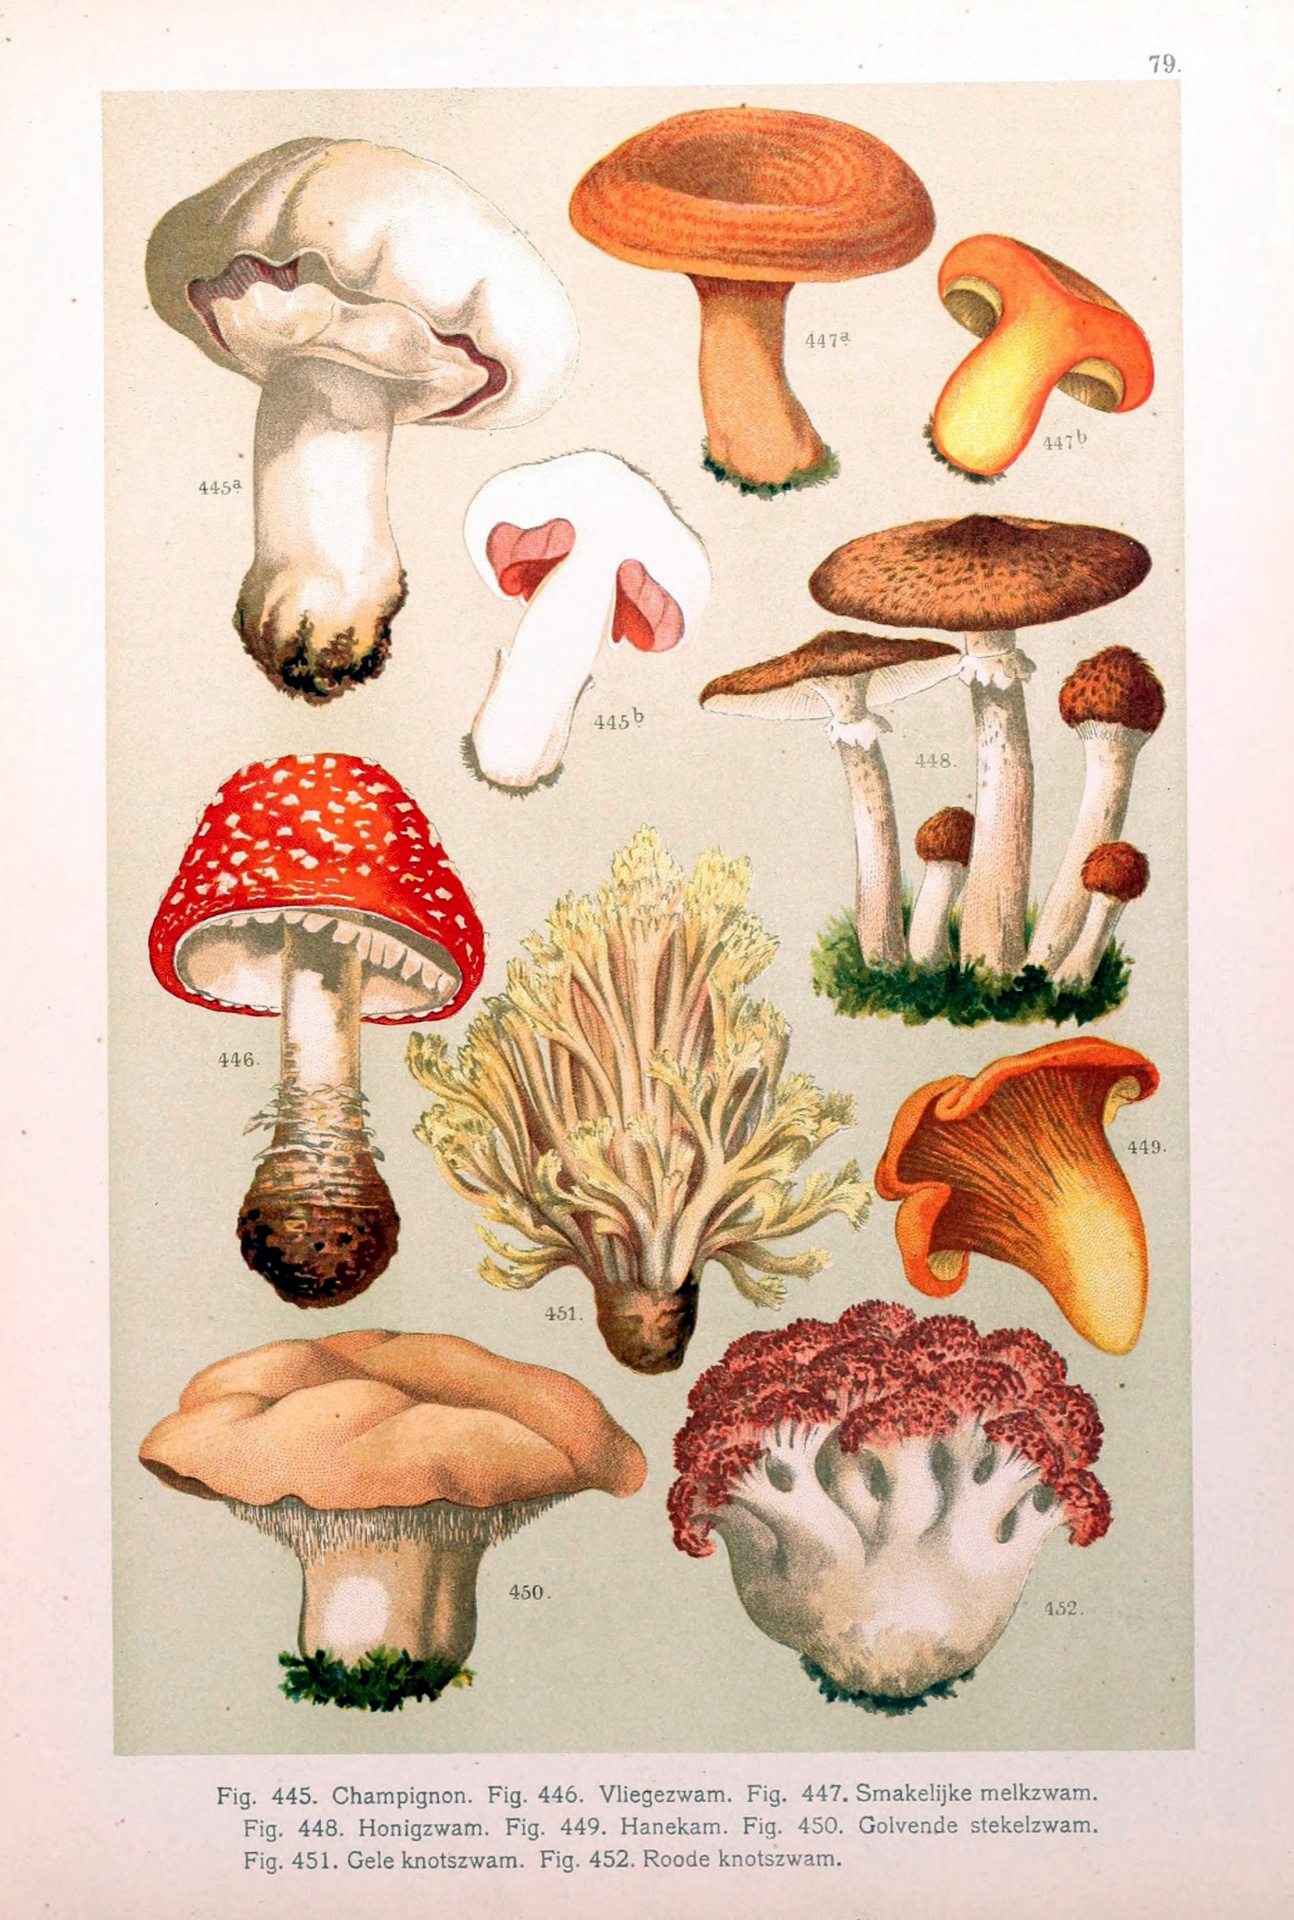 Mushrooms mushroom toadstool poisonous vintage art old antique illustration painting vintage